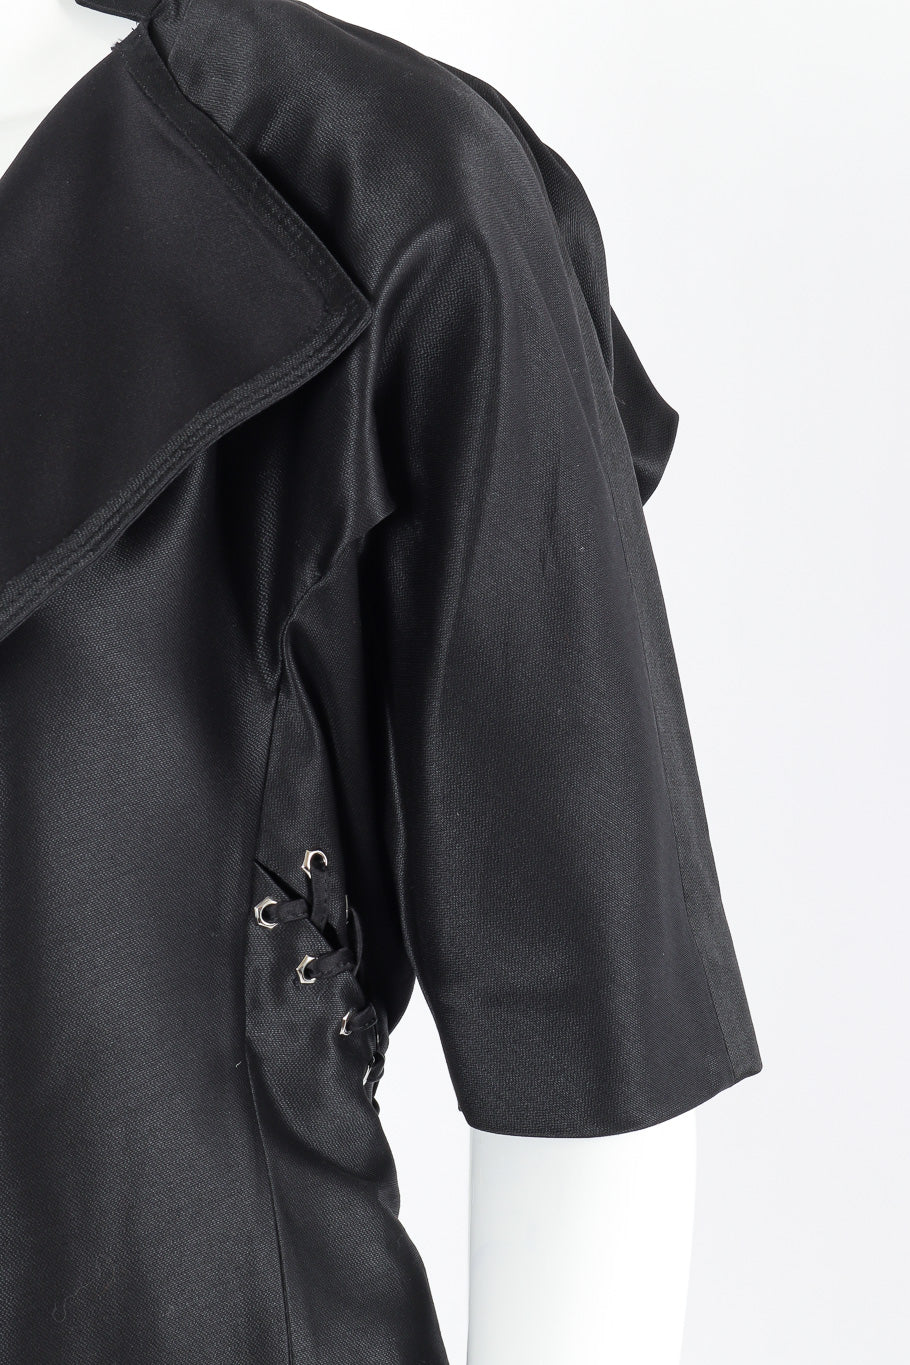 Grommet jacket by Yves Saint Laurent mannequin shoulder close  @recessla